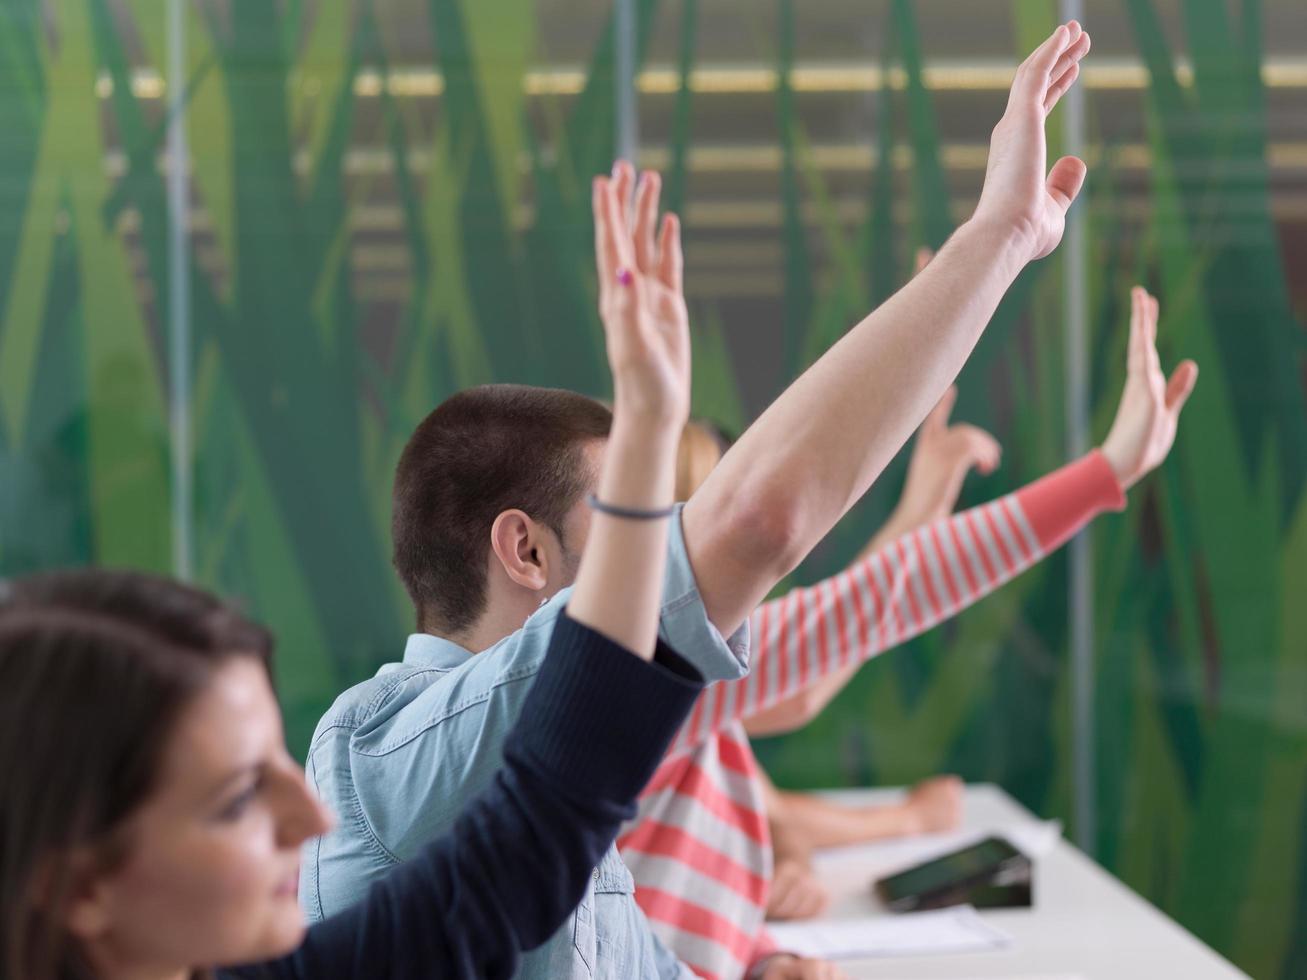 grupo de estudiantes levantan la mano en clase foto